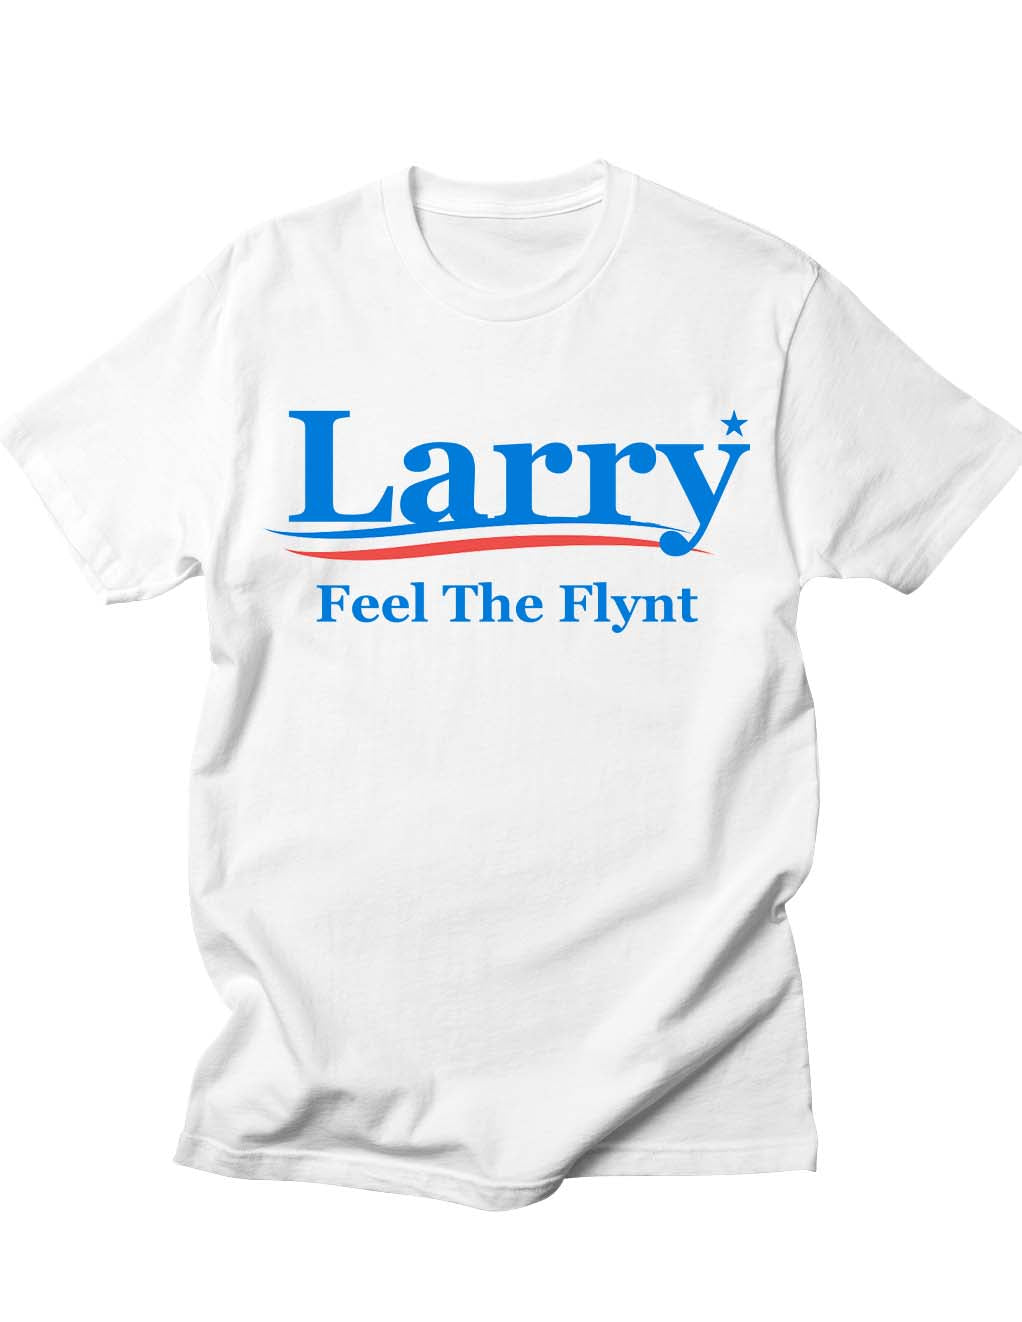 Larry Flynt for President Feel The Flynt Tee